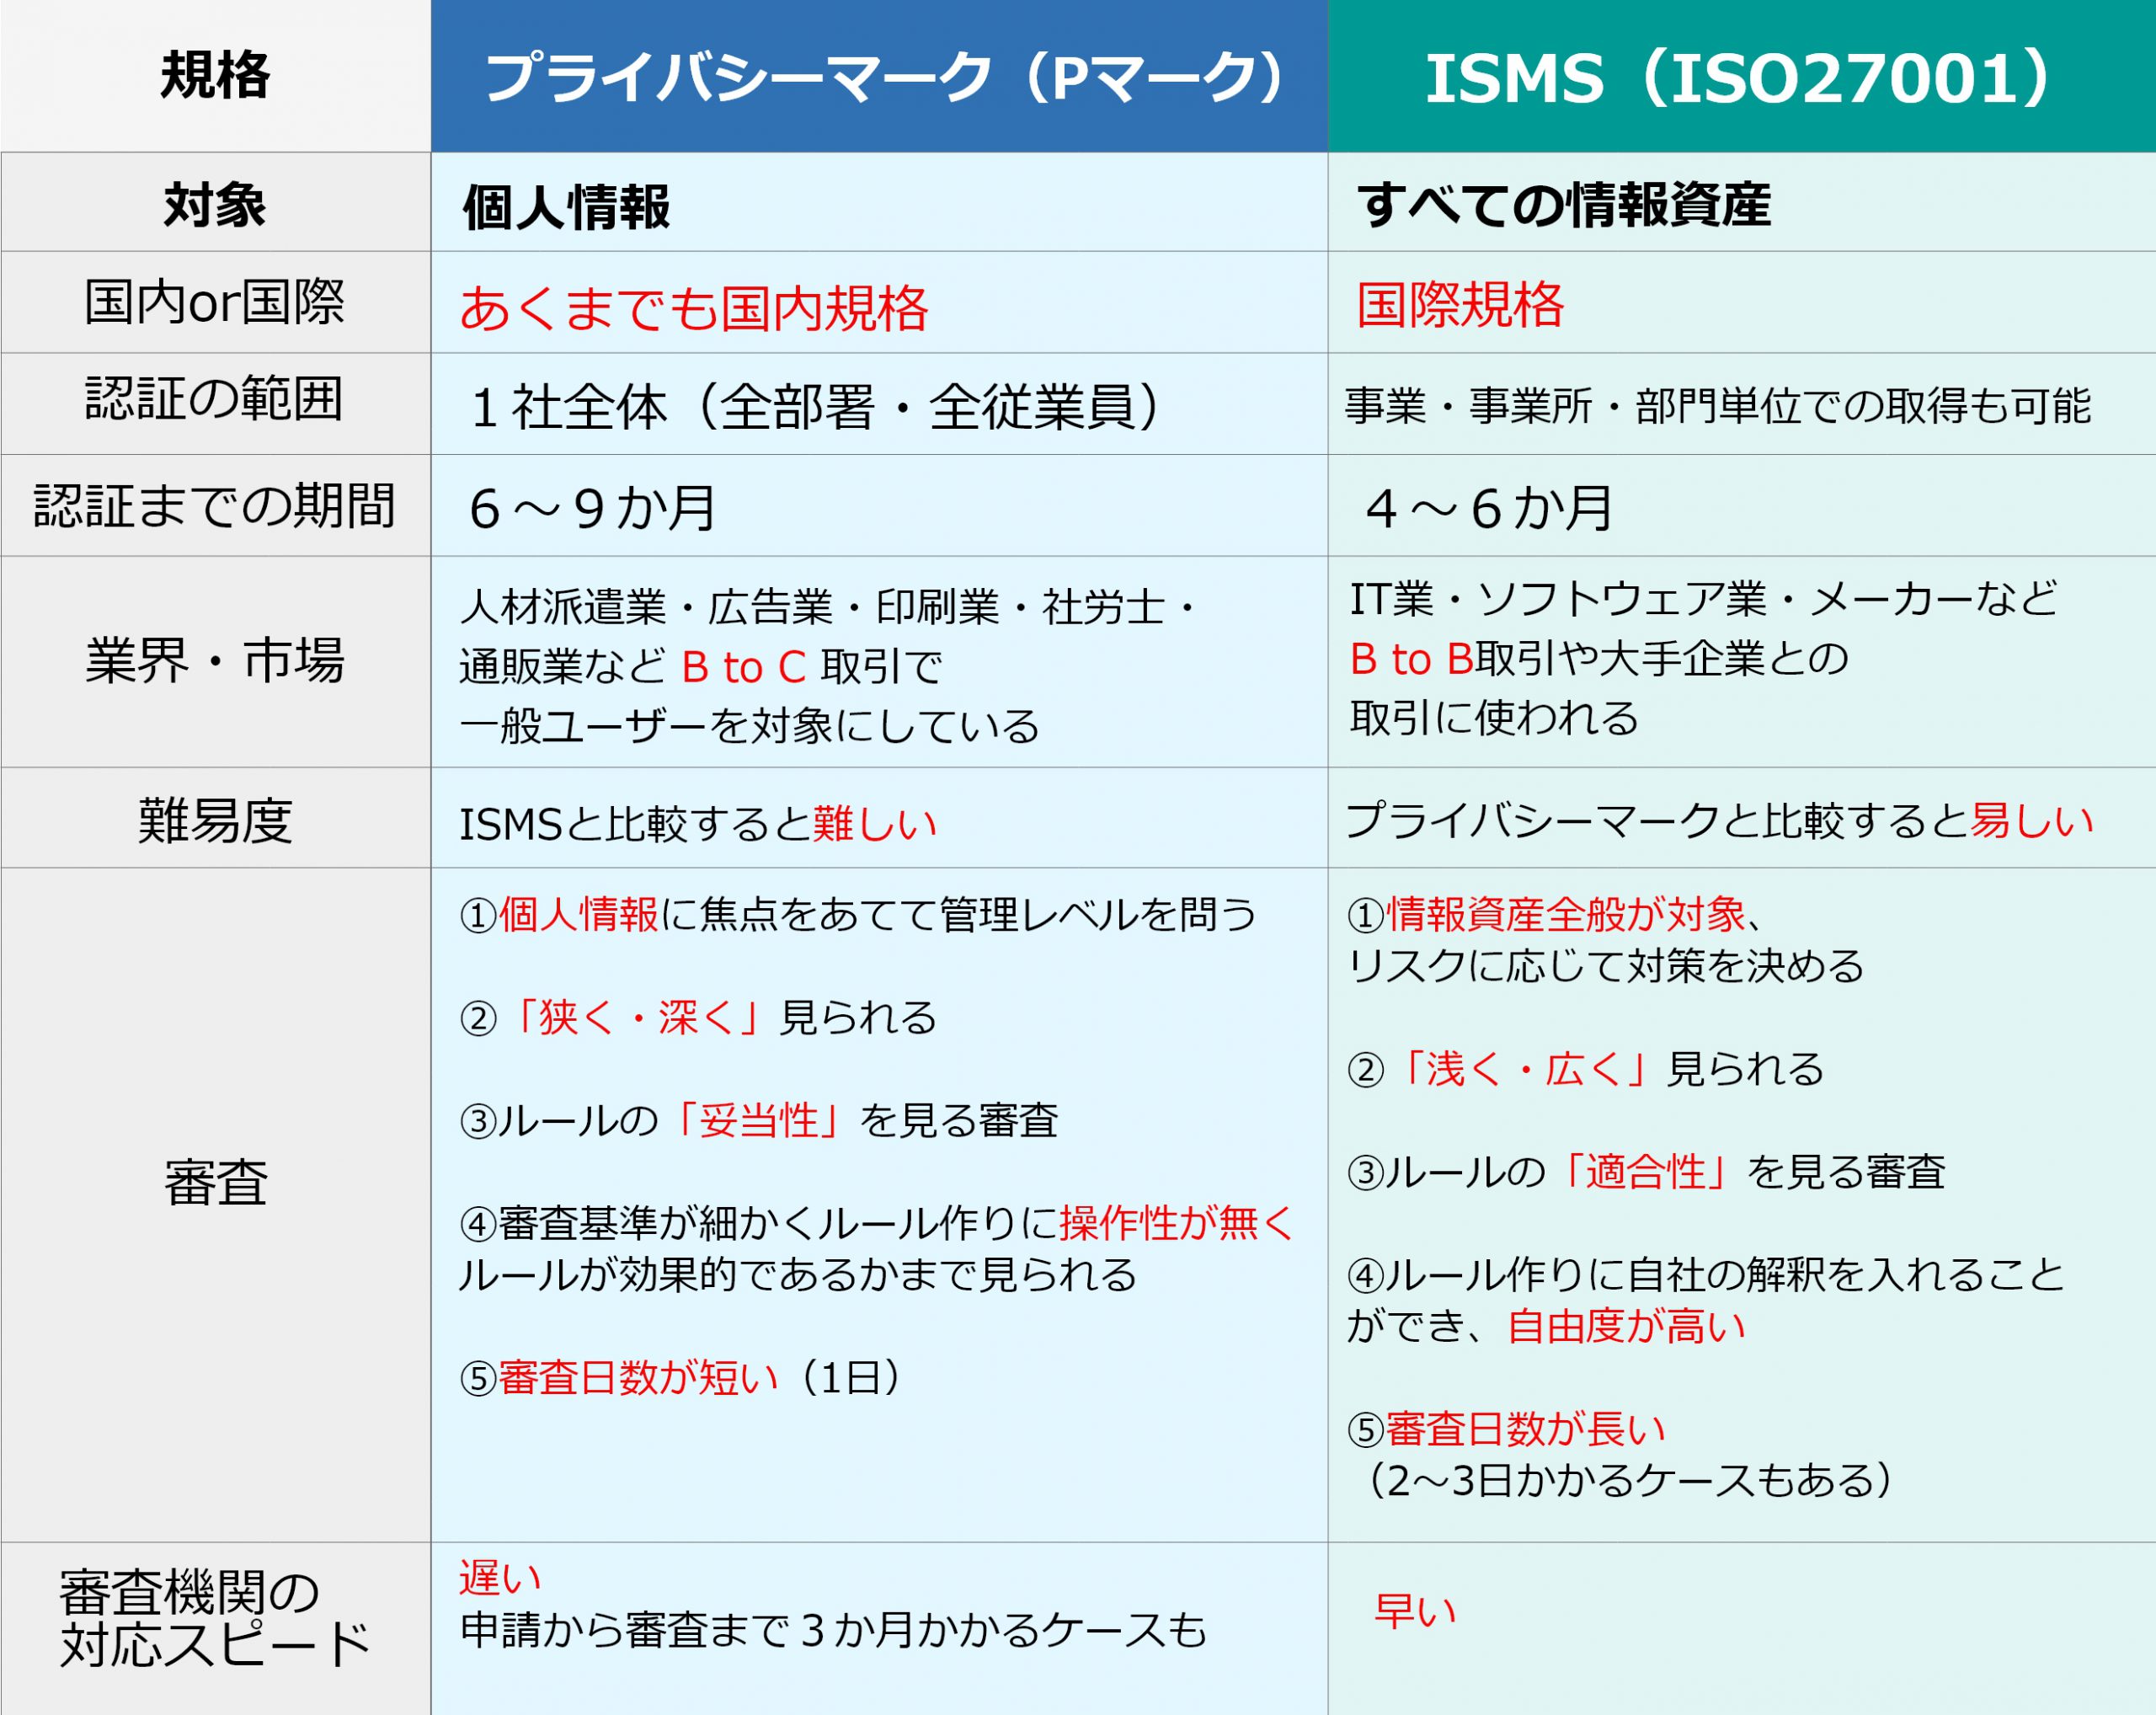 ISMS（ISO27001）とプライバシーマーク（Pマーク）の比較表